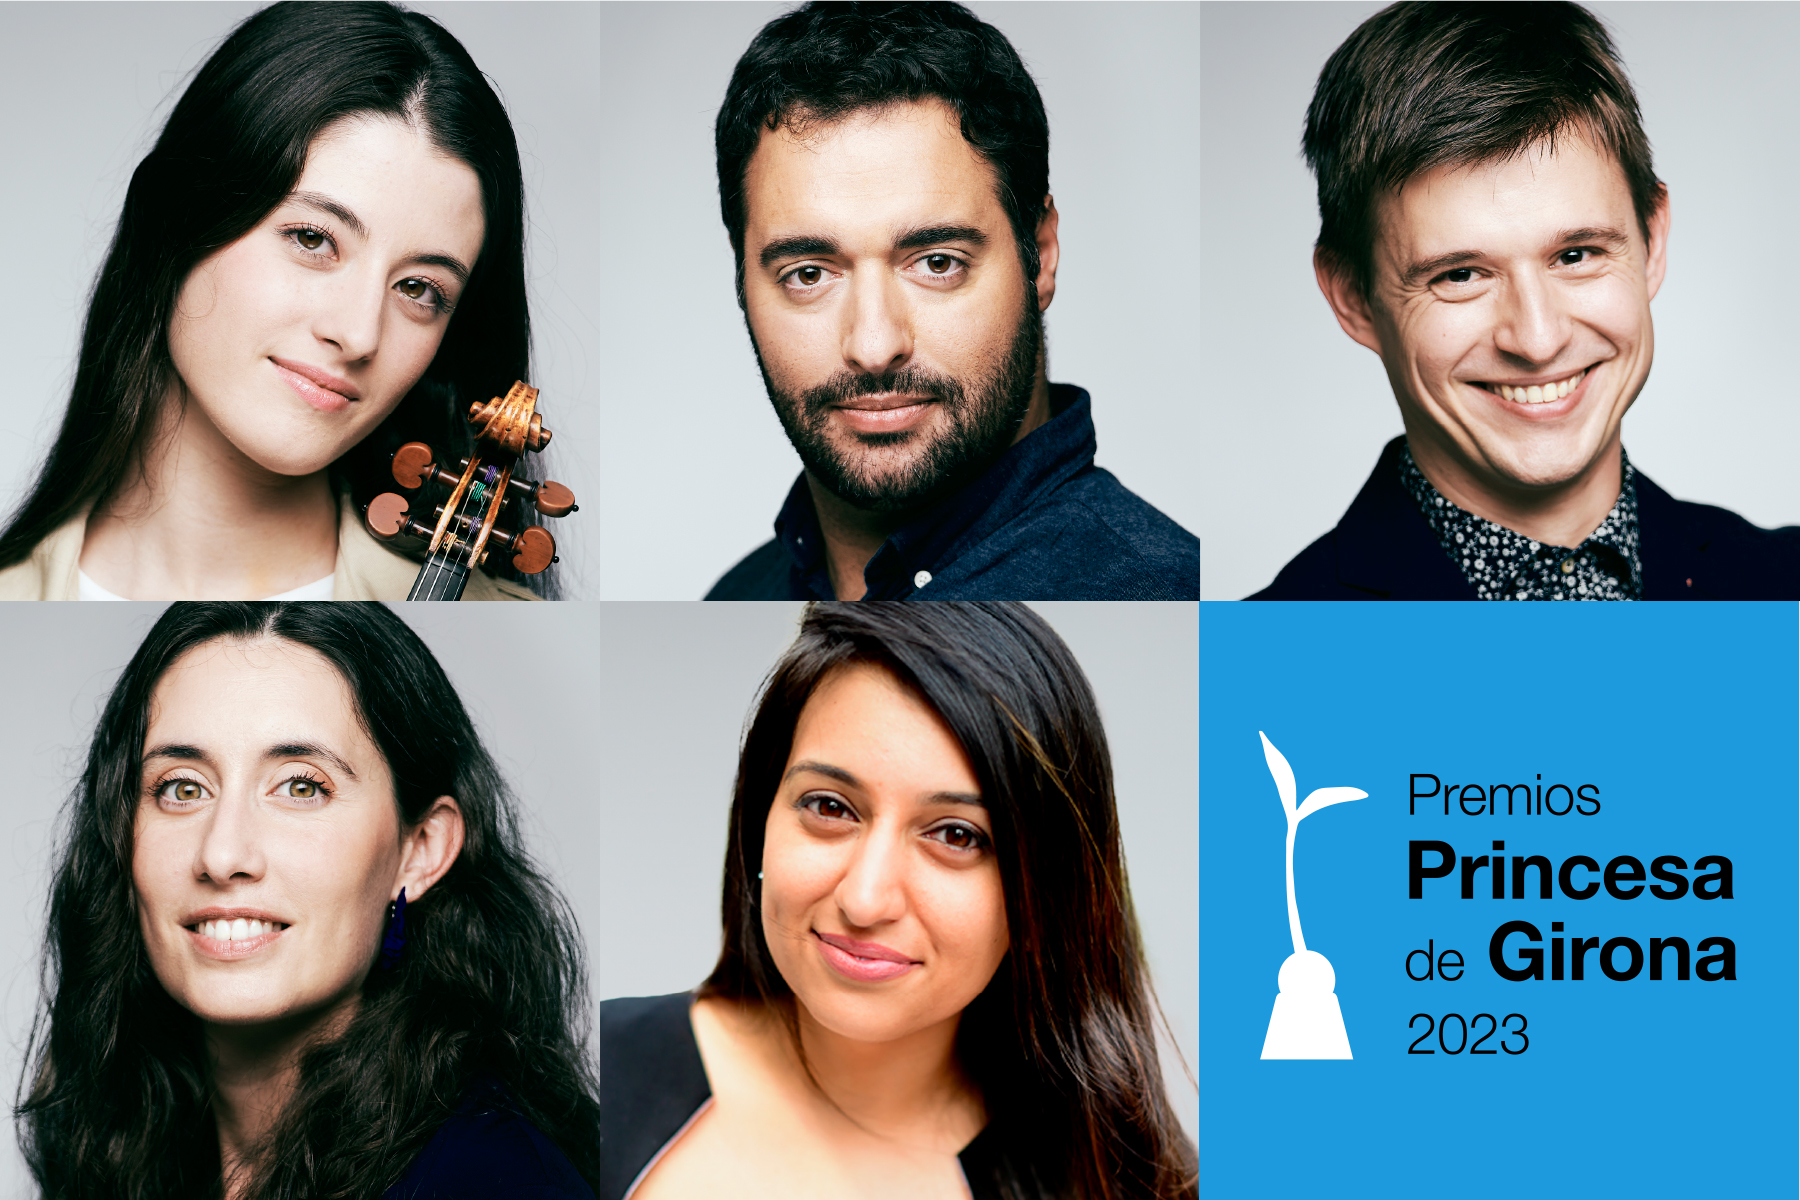 Els Premis Princesa de Girona 2023 es lliuraran el 5 de juliol en una gala que girarà al voltant del talent jove i dels grans reptes globals